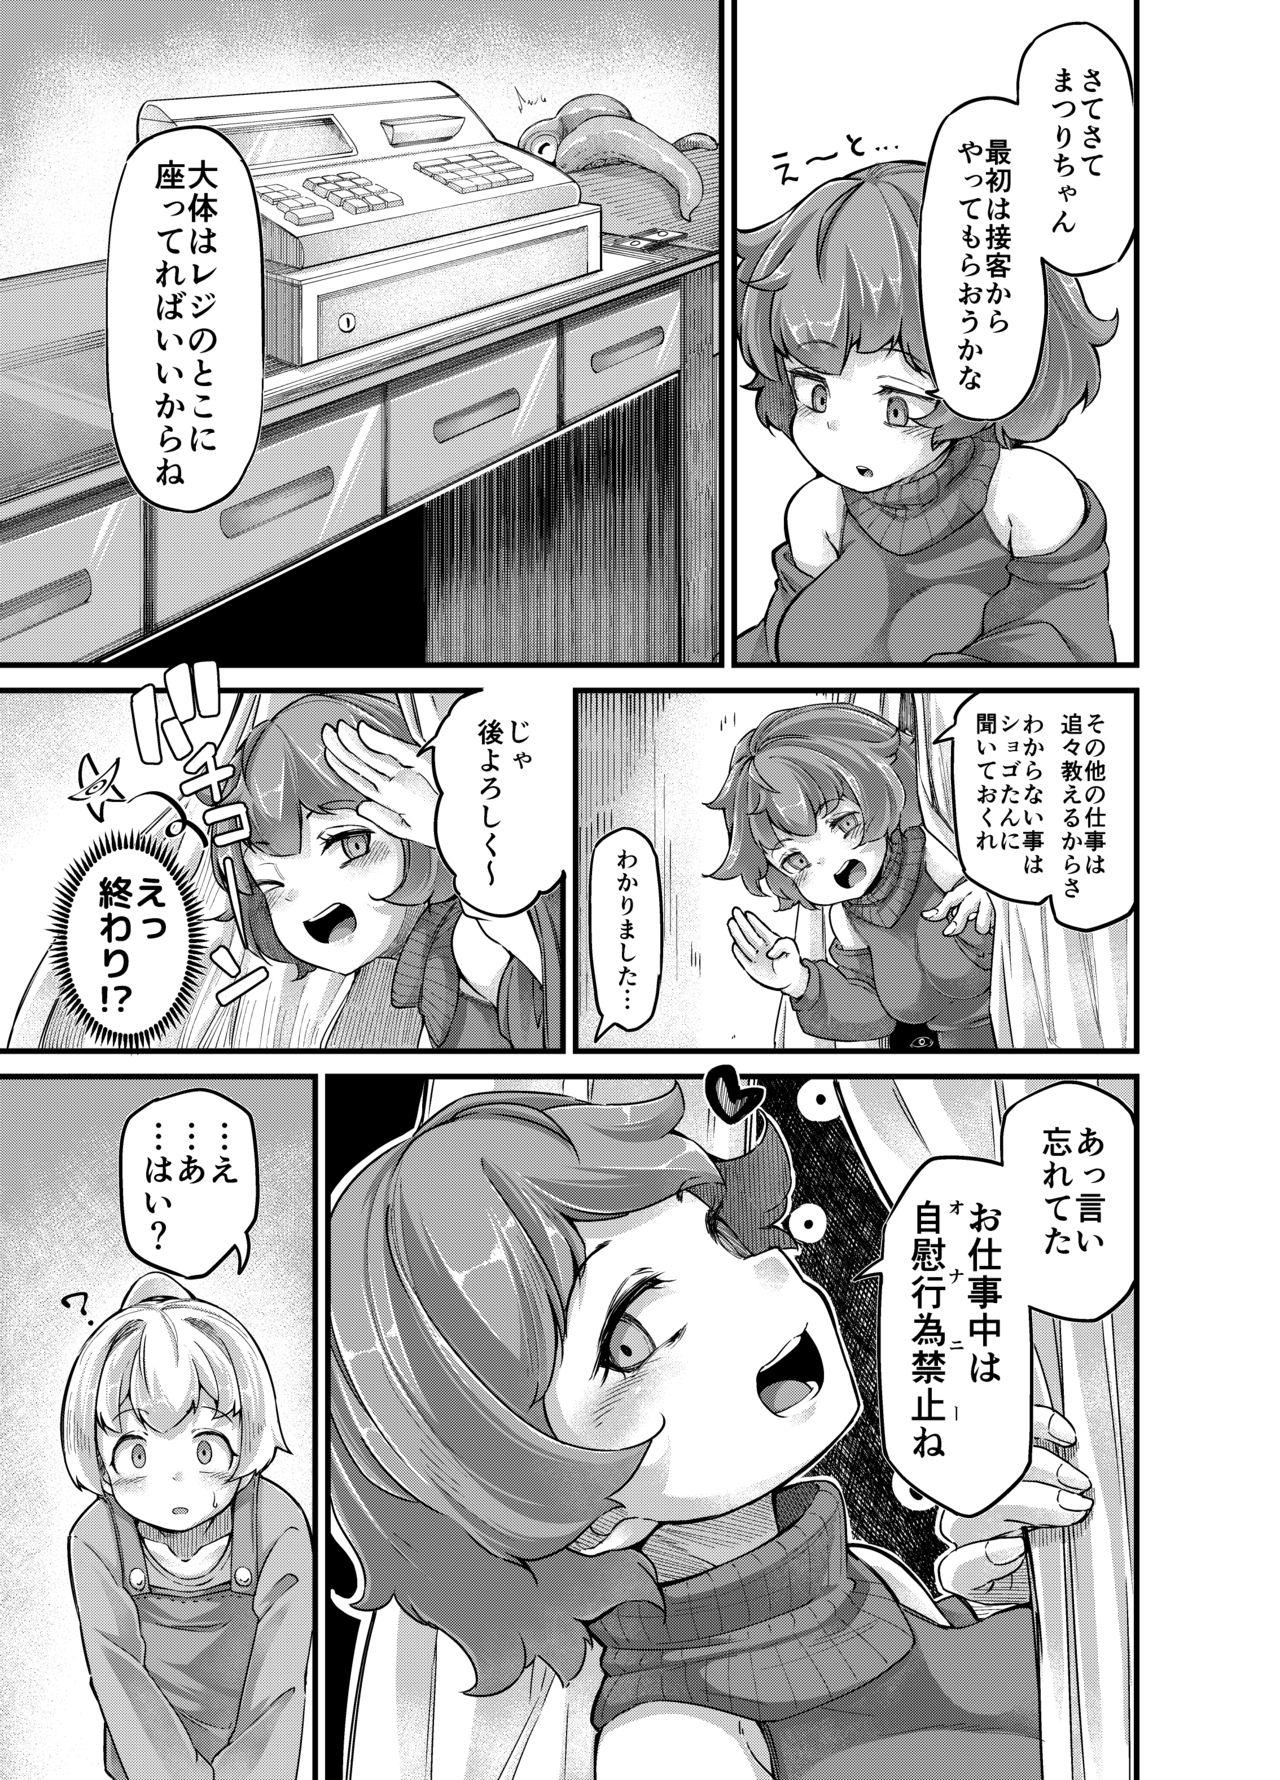 Candid Anata no Machi no Shokushuya-san 4 - Original Action - Page 11